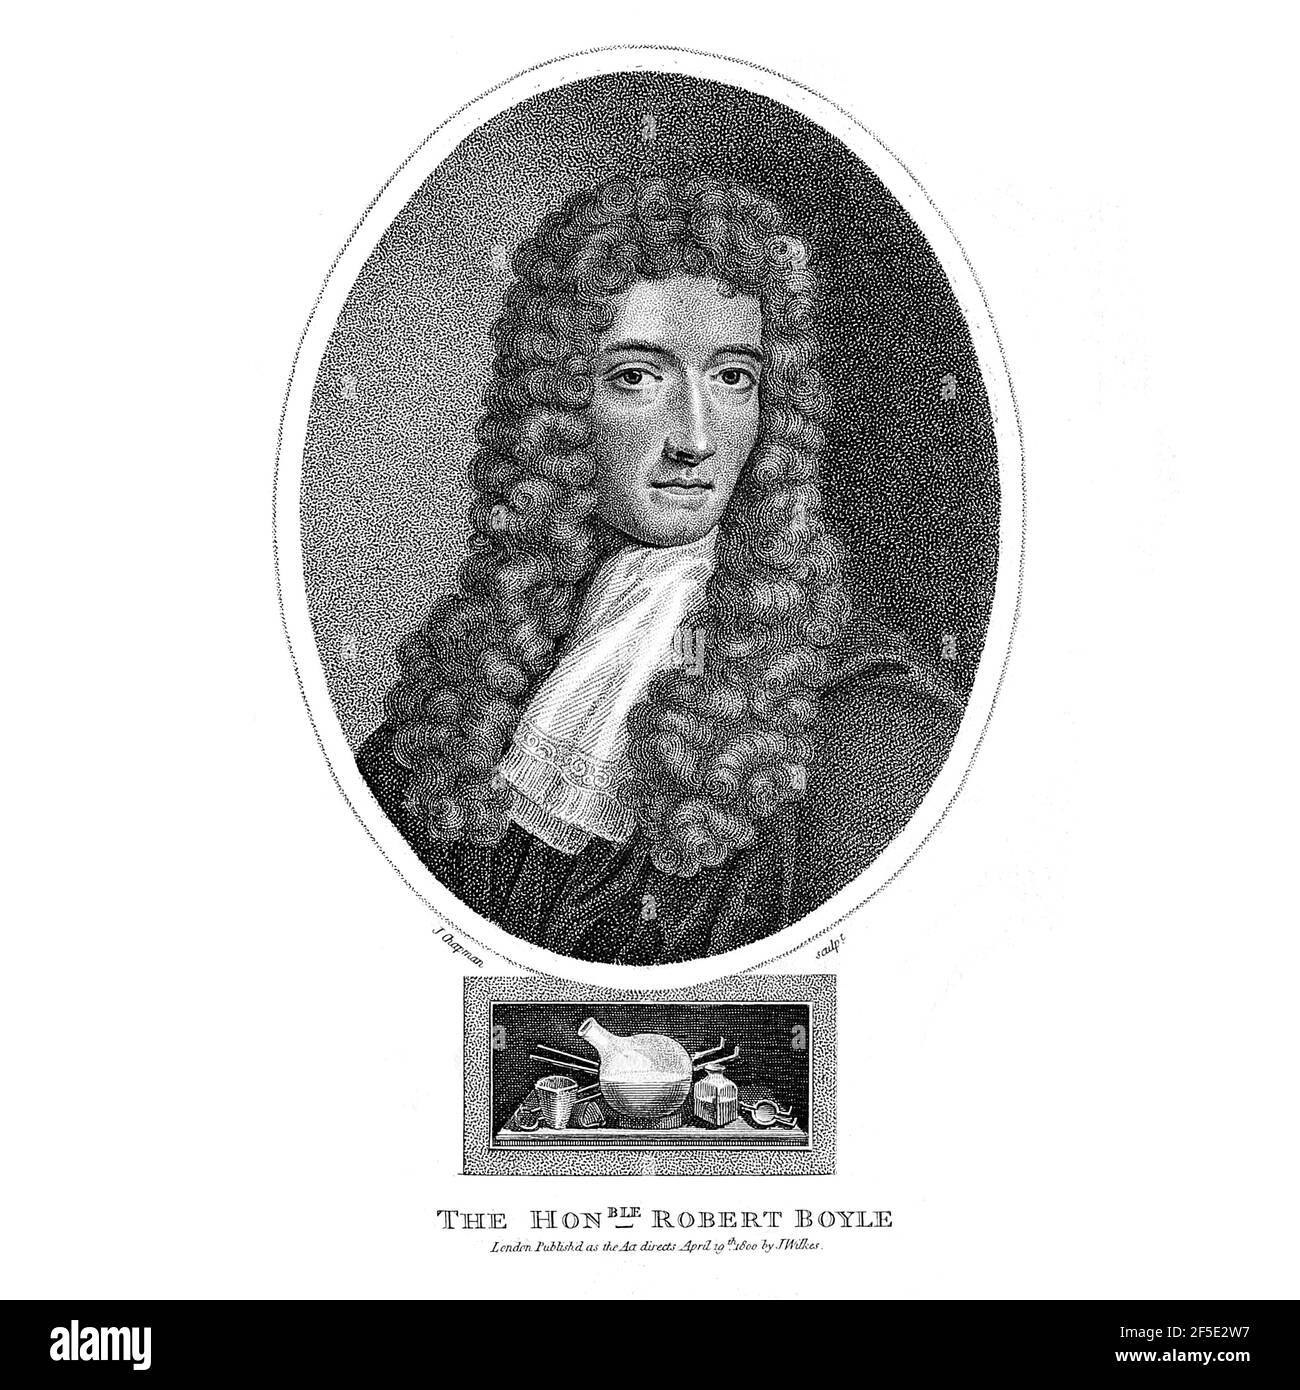 Robert Boyle FRS (25. Januar 1627 – 31. Dezember 1691) war ein anglo-irischer Naturphilosoph, Chemiker, Physiker und Erfinder. Boyle gilt heute weitgehend als der erste moderne Chemiker und damit einer der Begründer der modernen Chemie und einer der Pioniere der modernen experimentellen wissenschaftlichen Methode. Er ist am besten bekannt für Boyles Gesetz, das die umgekehrt proportionale Beziehung zwischen dem absoluten Druck und Volumen eines Gases beschreibt, wenn die Temperatur innerhalb eines geschlossenen Systems konstant gehalten wird. Unter seinen Werken wird der skeptische Chymist als ein Eckstein Buch auf dem Gebiet der chem gesehen Stockfoto